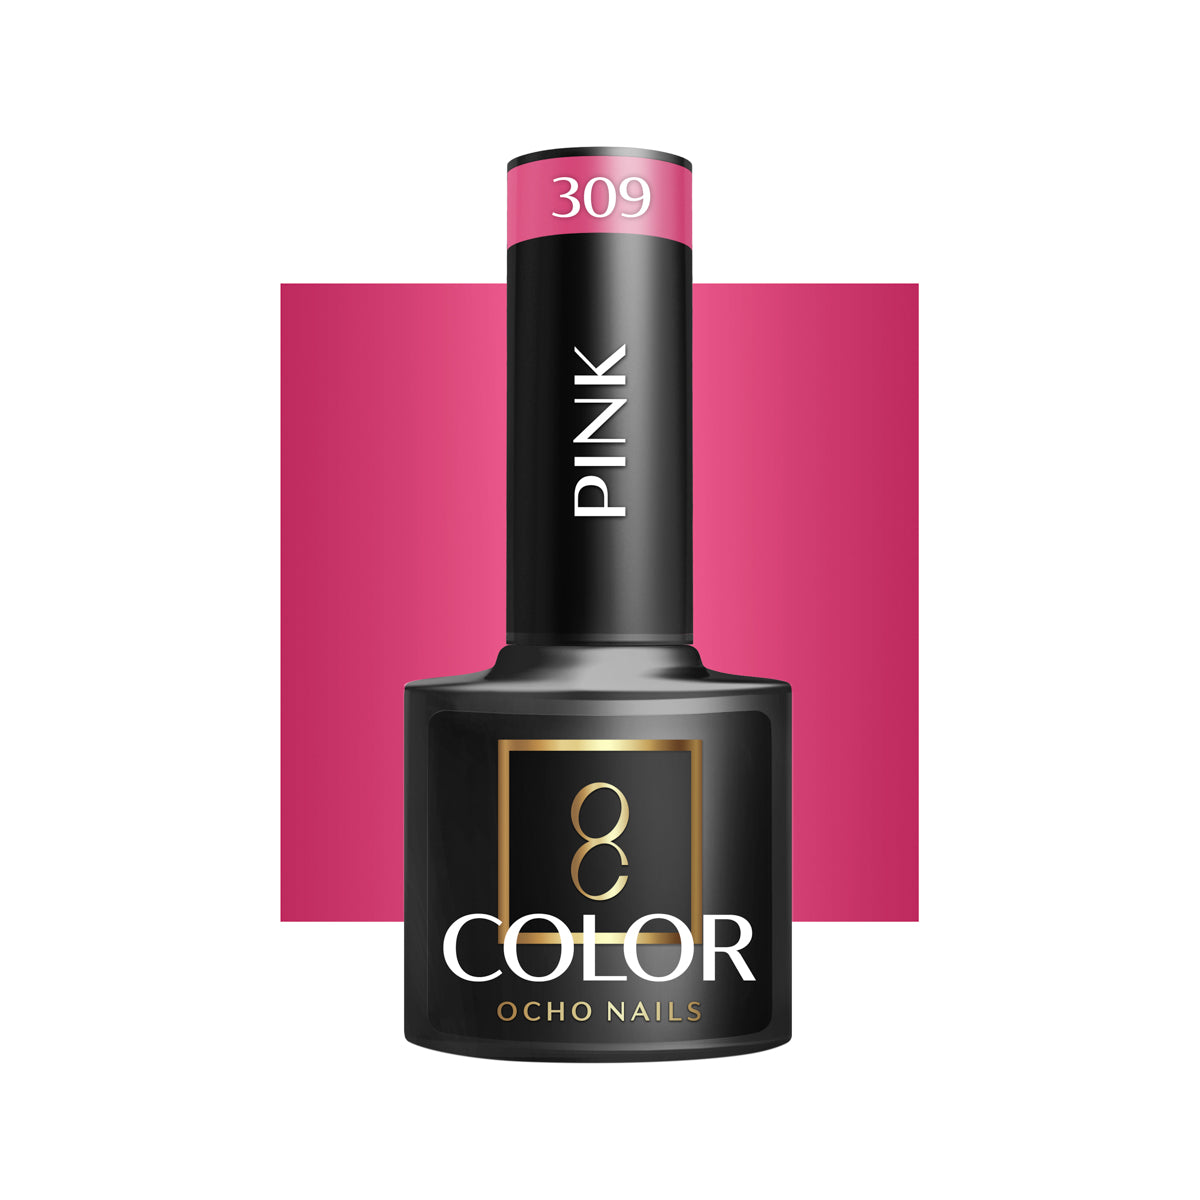 OCHO NAILS Hybride nagellak roze 309 -5 g